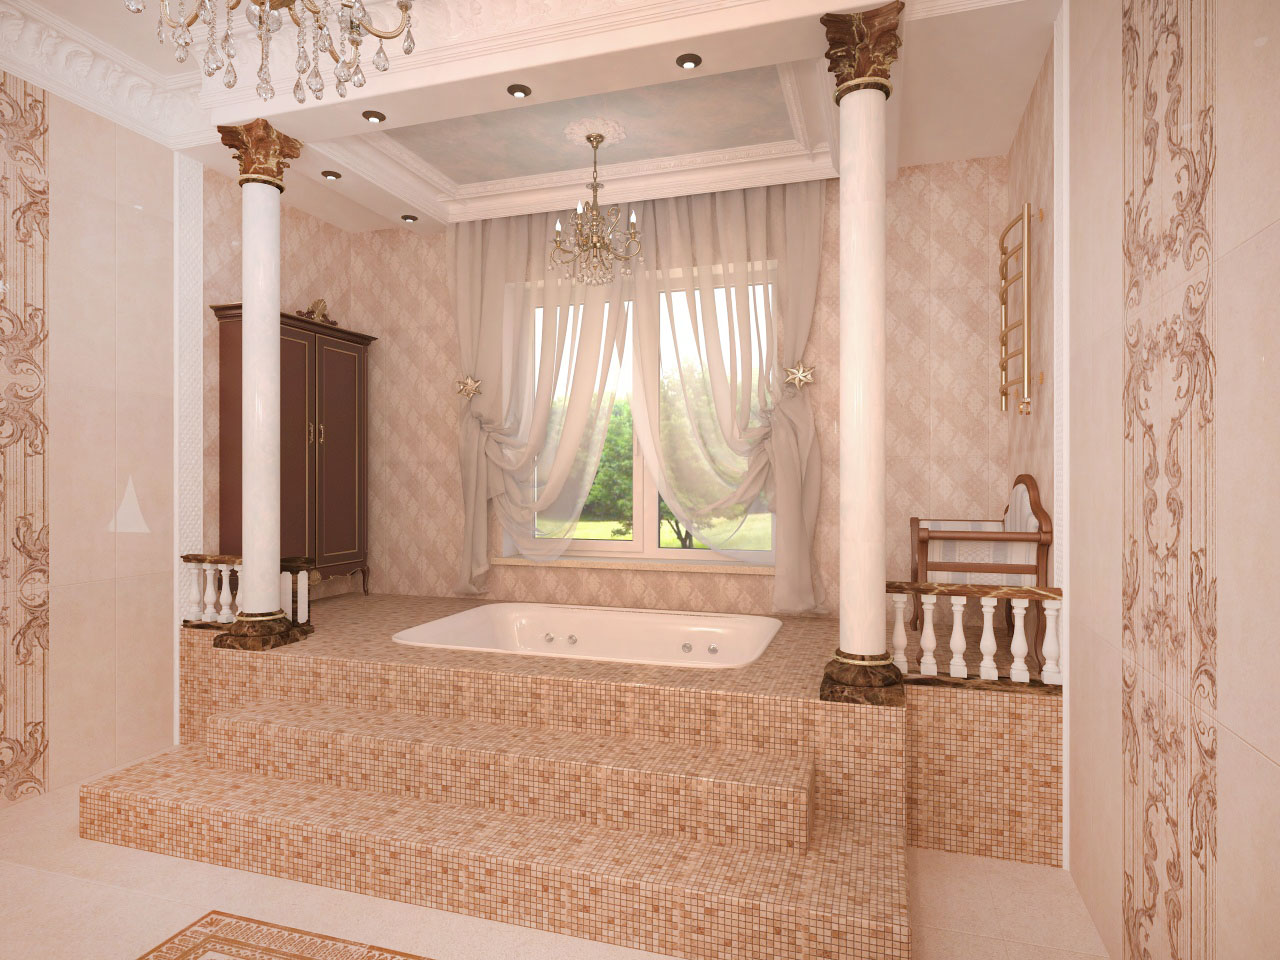 дизайн интерьера, дизайн ванной комнаты, дизайн большой ванной комнаты, классическая ванна, джакузи, ванная комната с колоннами, ванна со ступенями, ванна на пьедестале